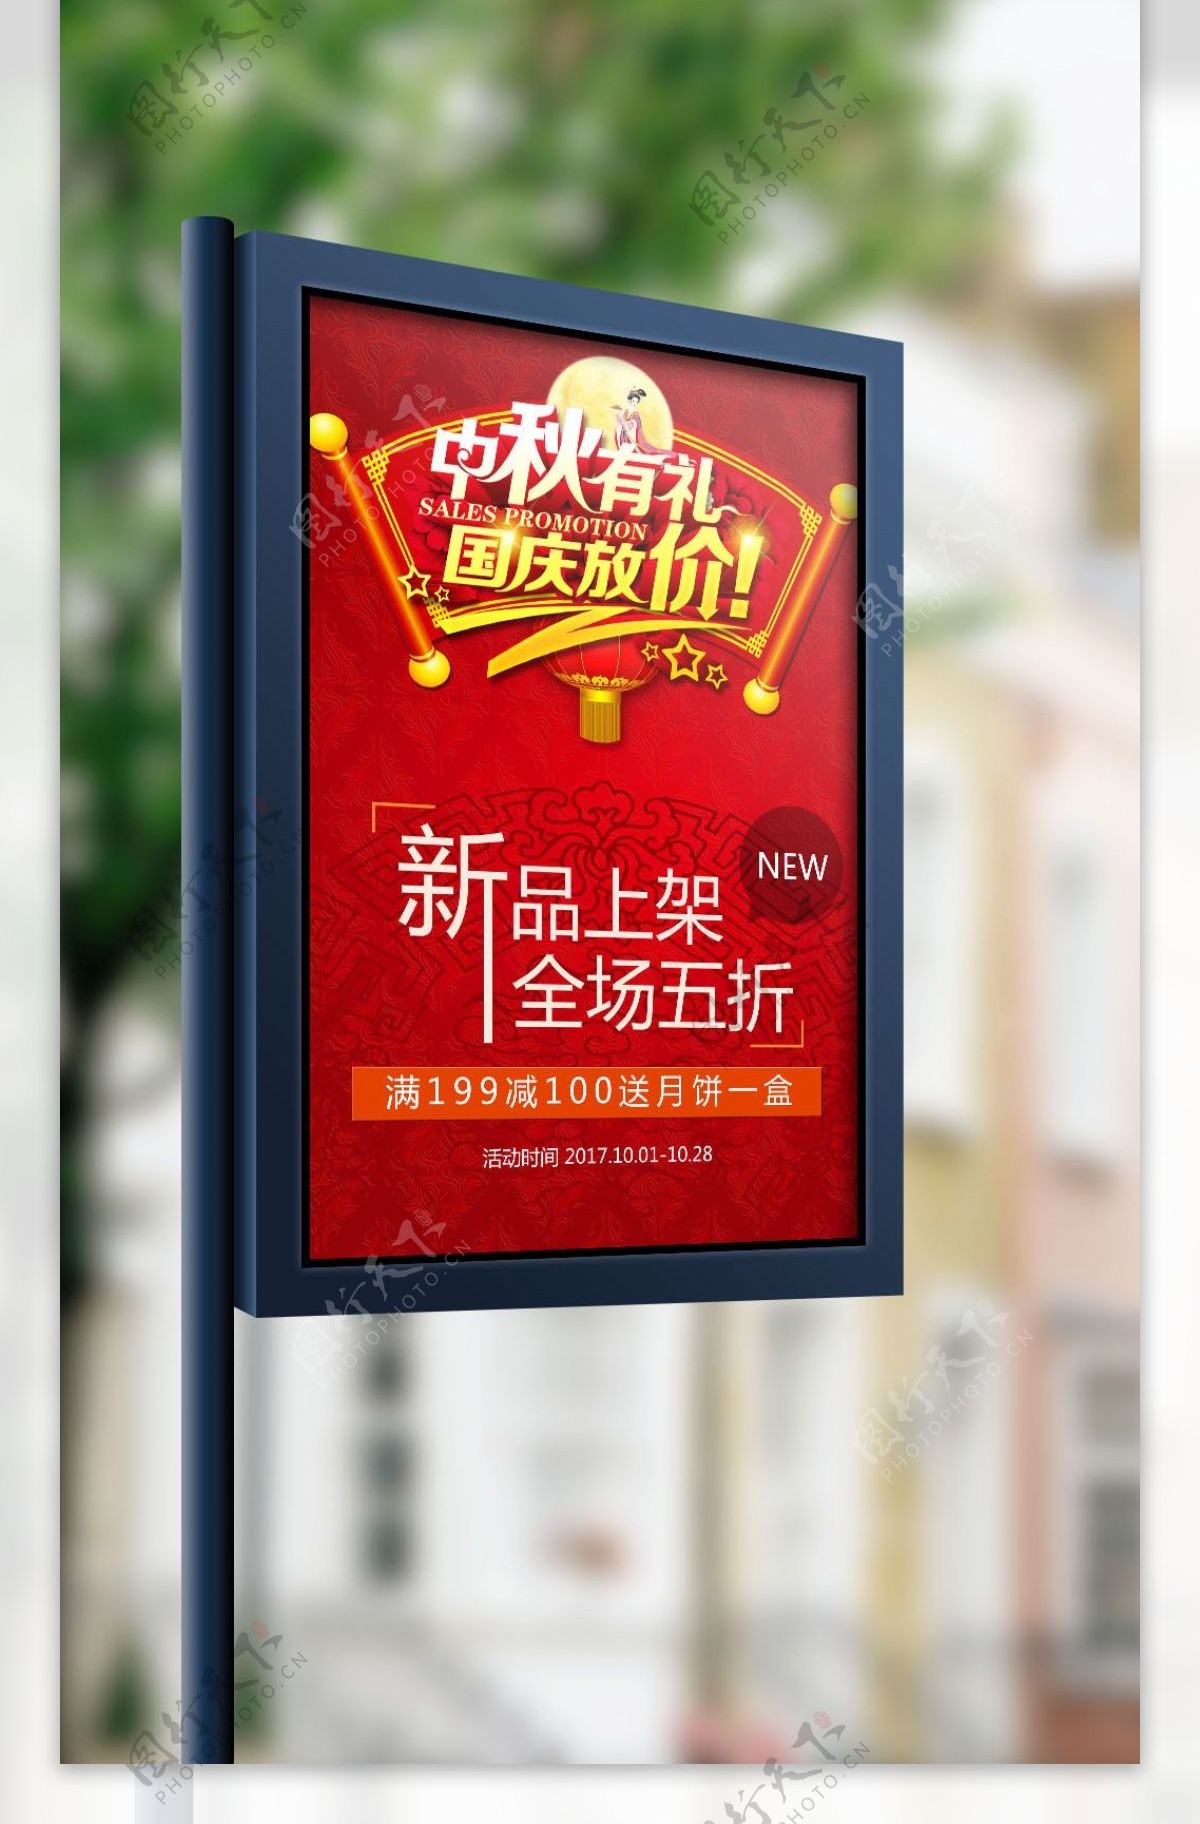 大气中国风国庆中秋特惠商场宣传海报